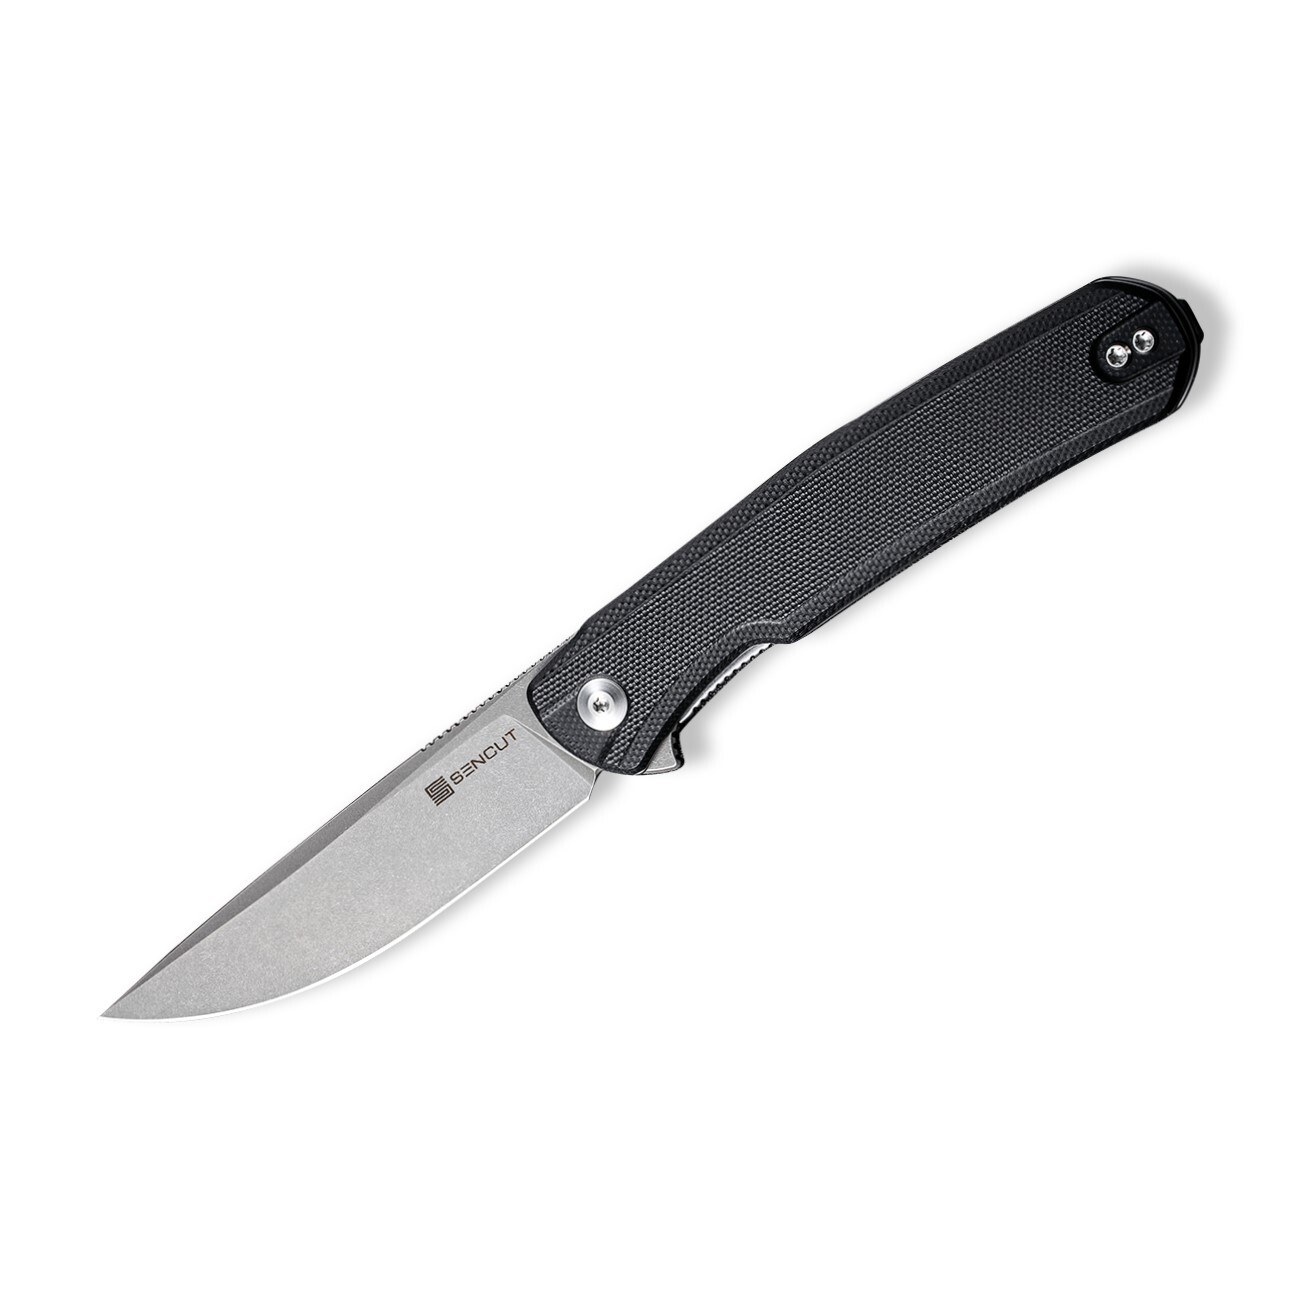 Складной нож Sencut Scitus, сталь D2, рукоять G10, gray/black